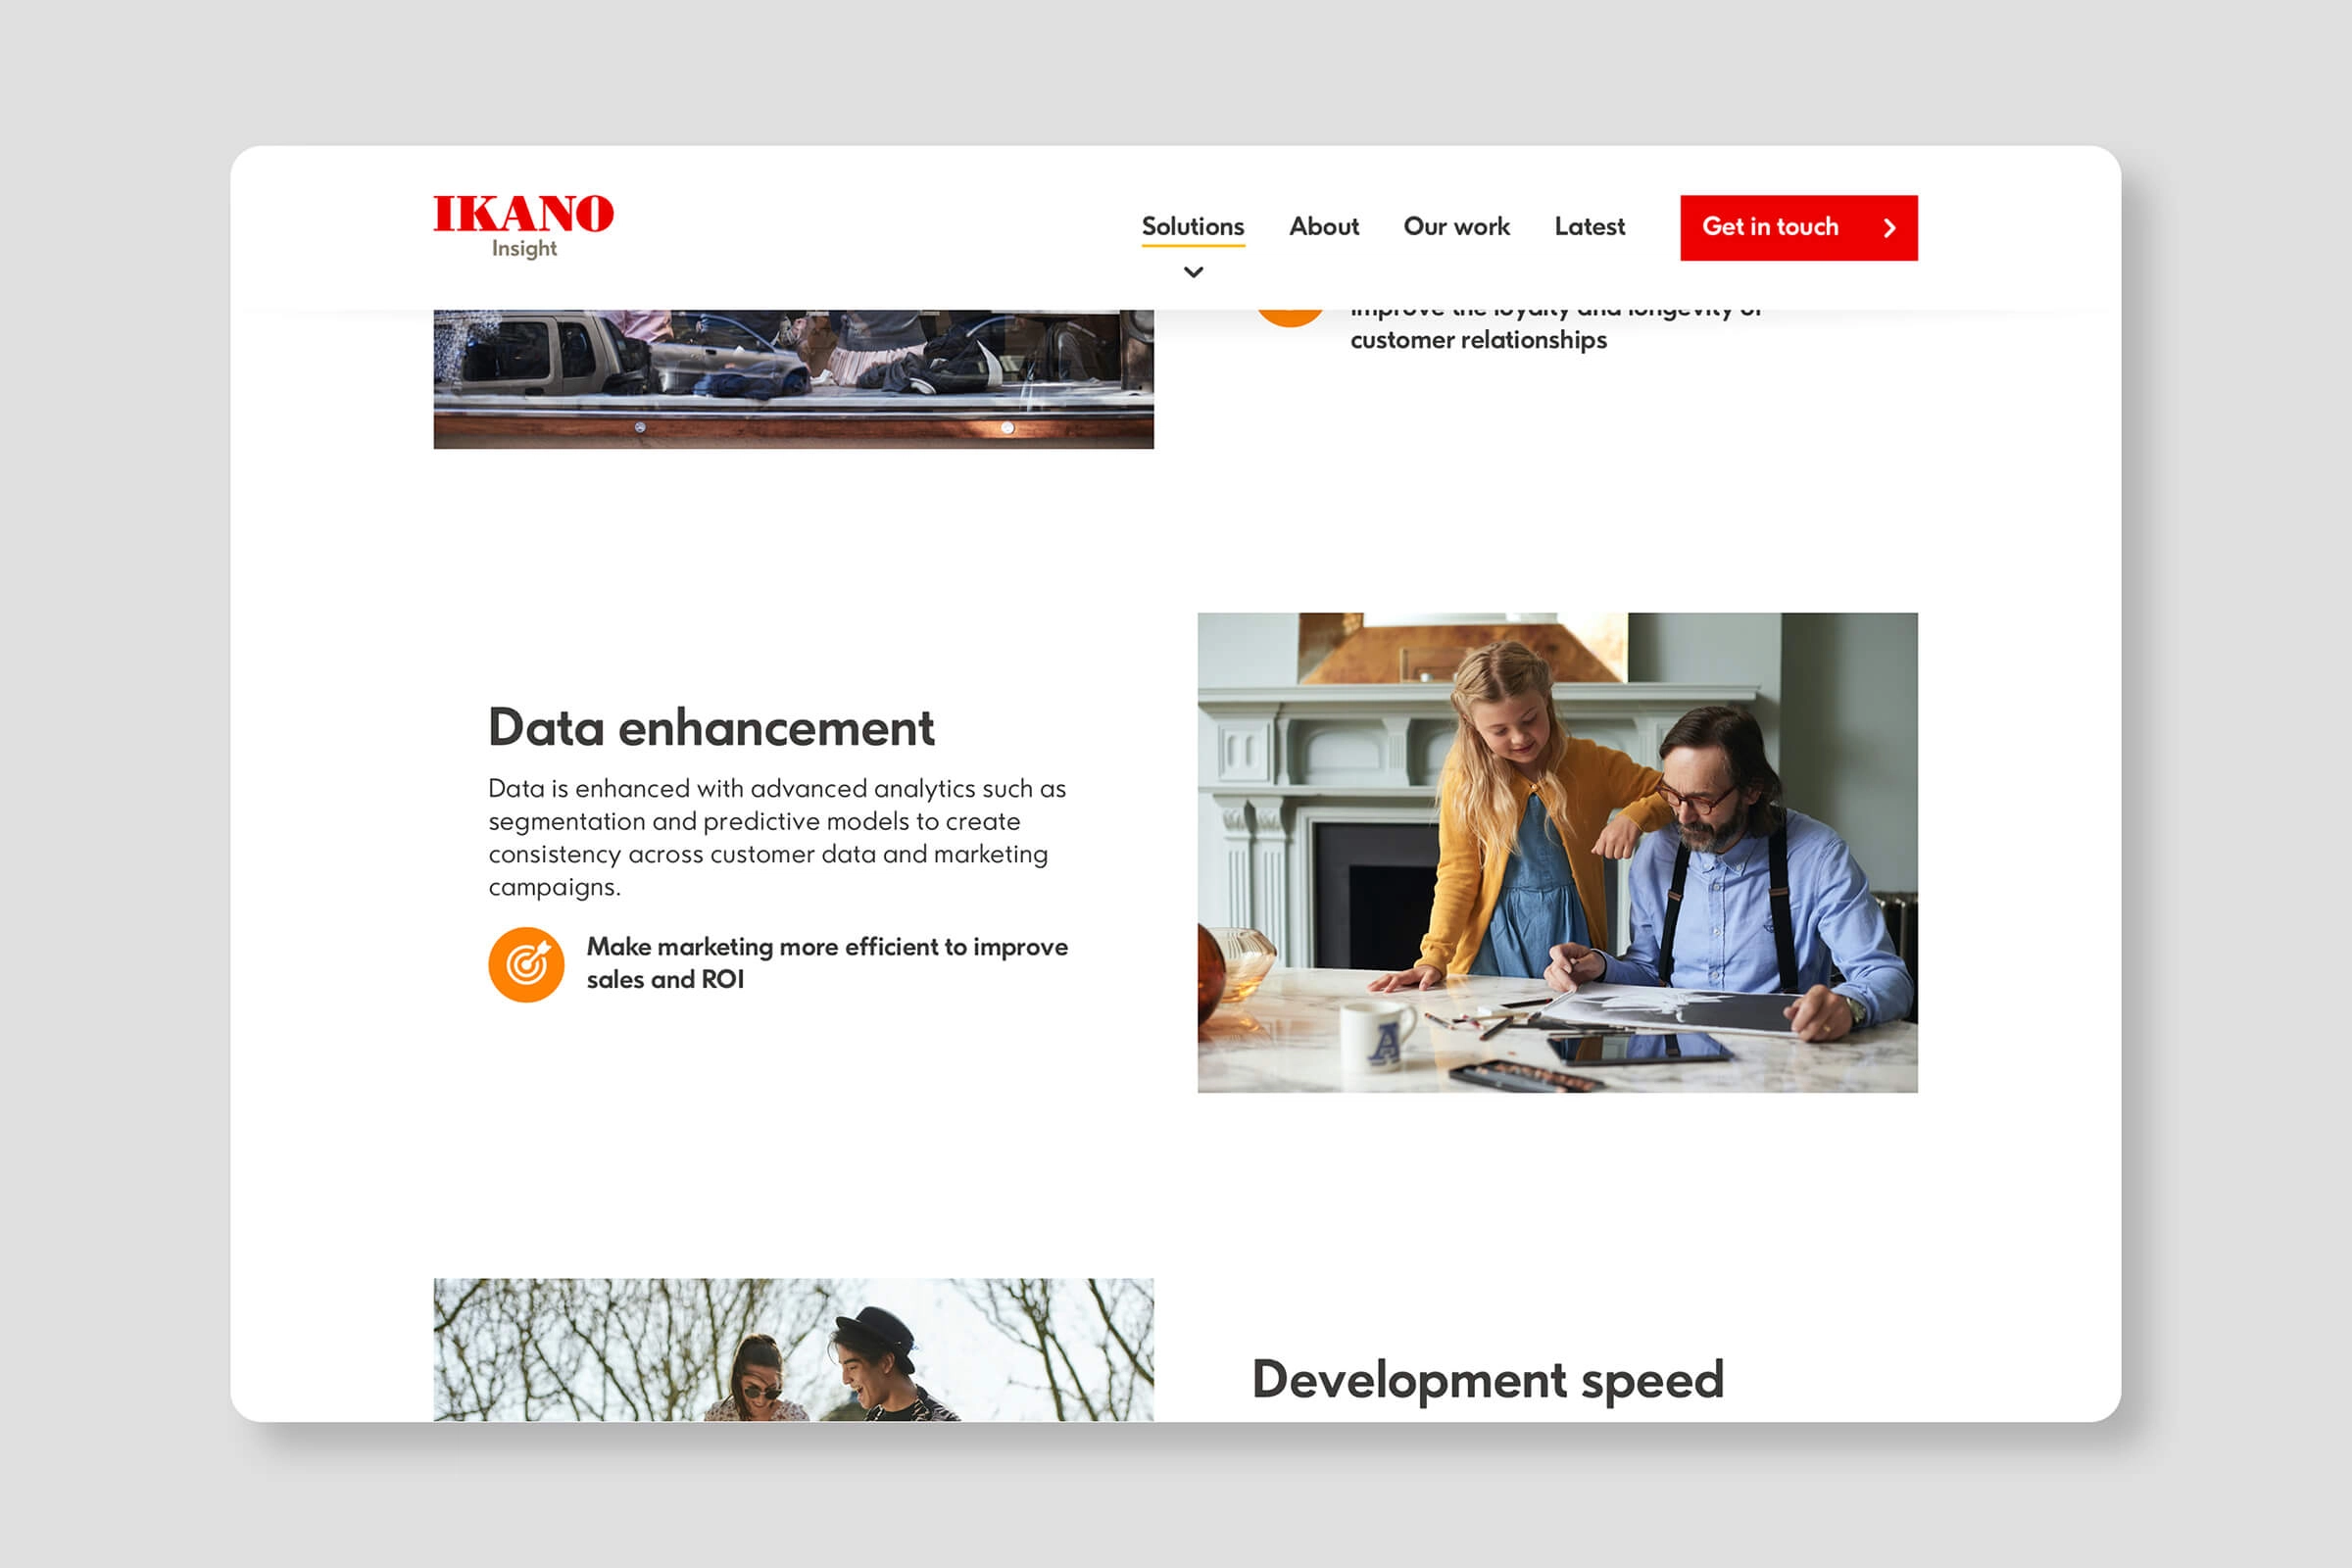 Ikano Website Screenshot - Data enhancement